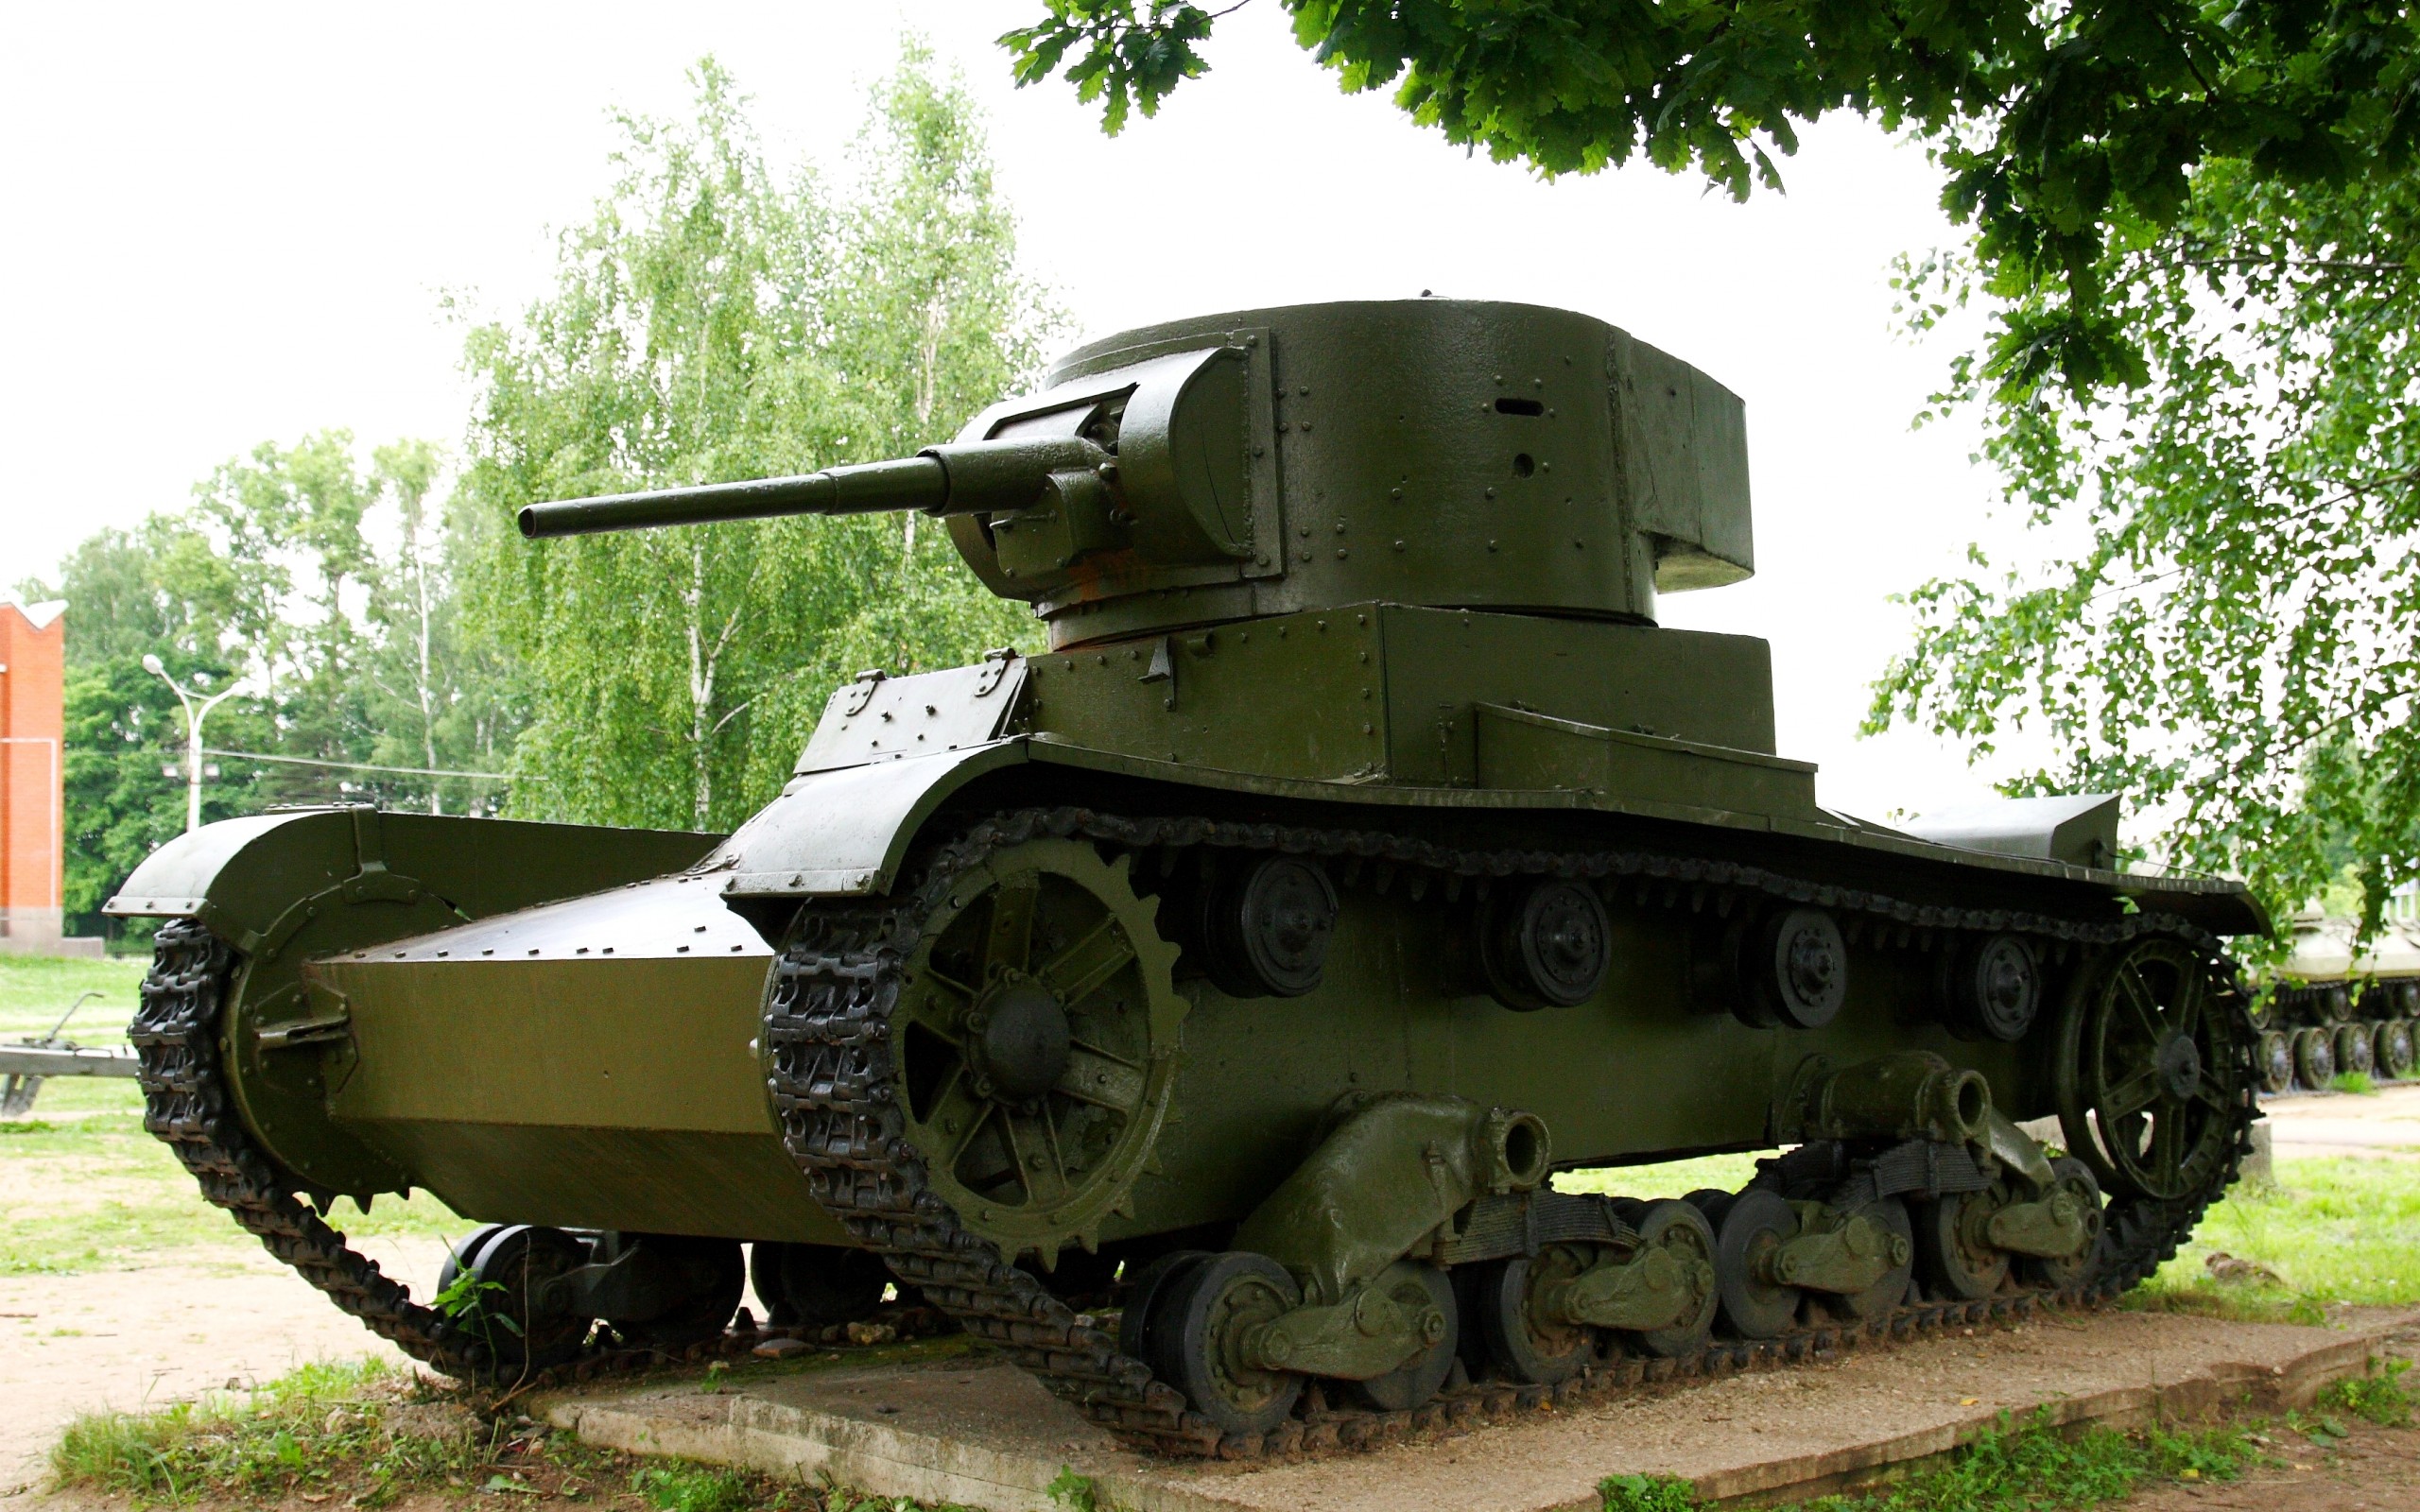 تصویر تانک نظامی بزرگ و بسیار پیشرفته با کیفیت ویژه 4K